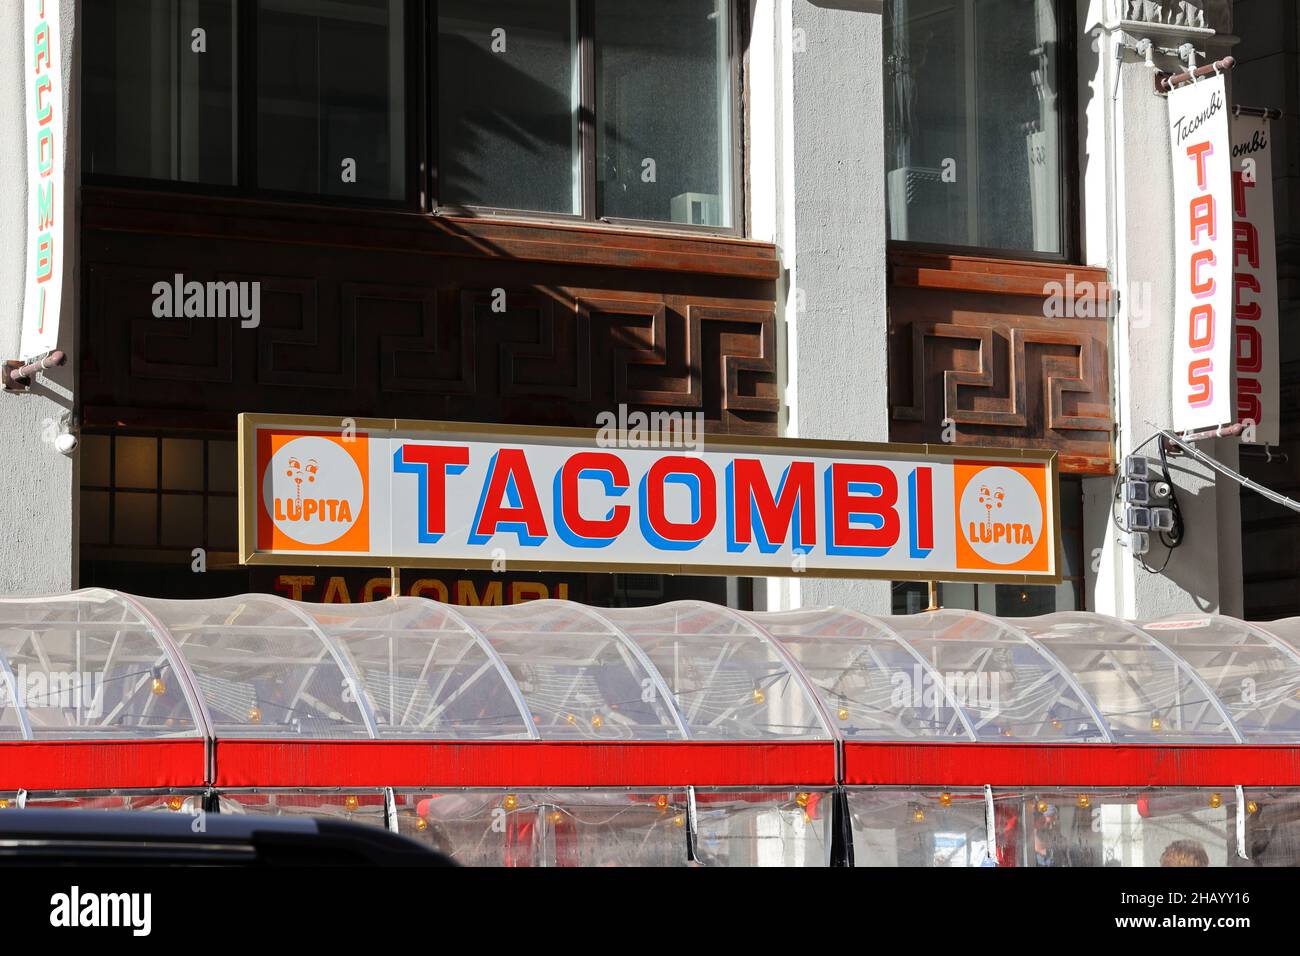 Insegna presso un ristorante Tacombi a New York City; una catena di ristoranti messicani veloci e informali e la loro marca Lupita di succhi freschi e bibite. Foto Stock